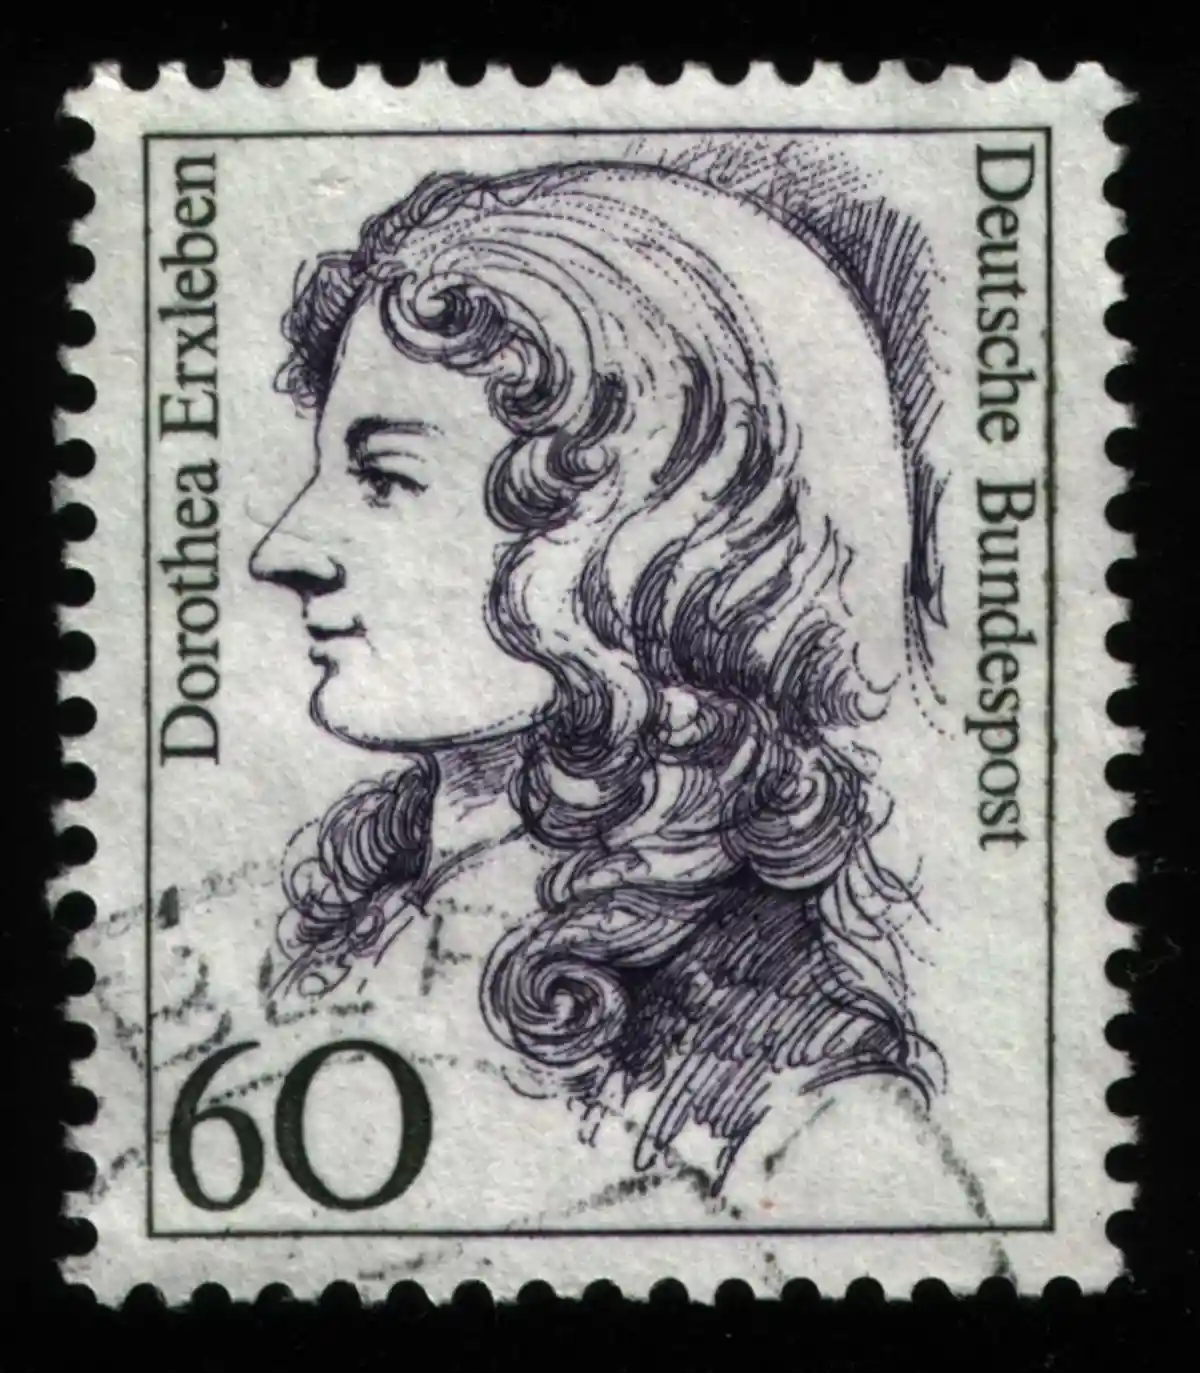 Изображение на марке первой женщины-врача в Германии. Фото: dic.academic.ru